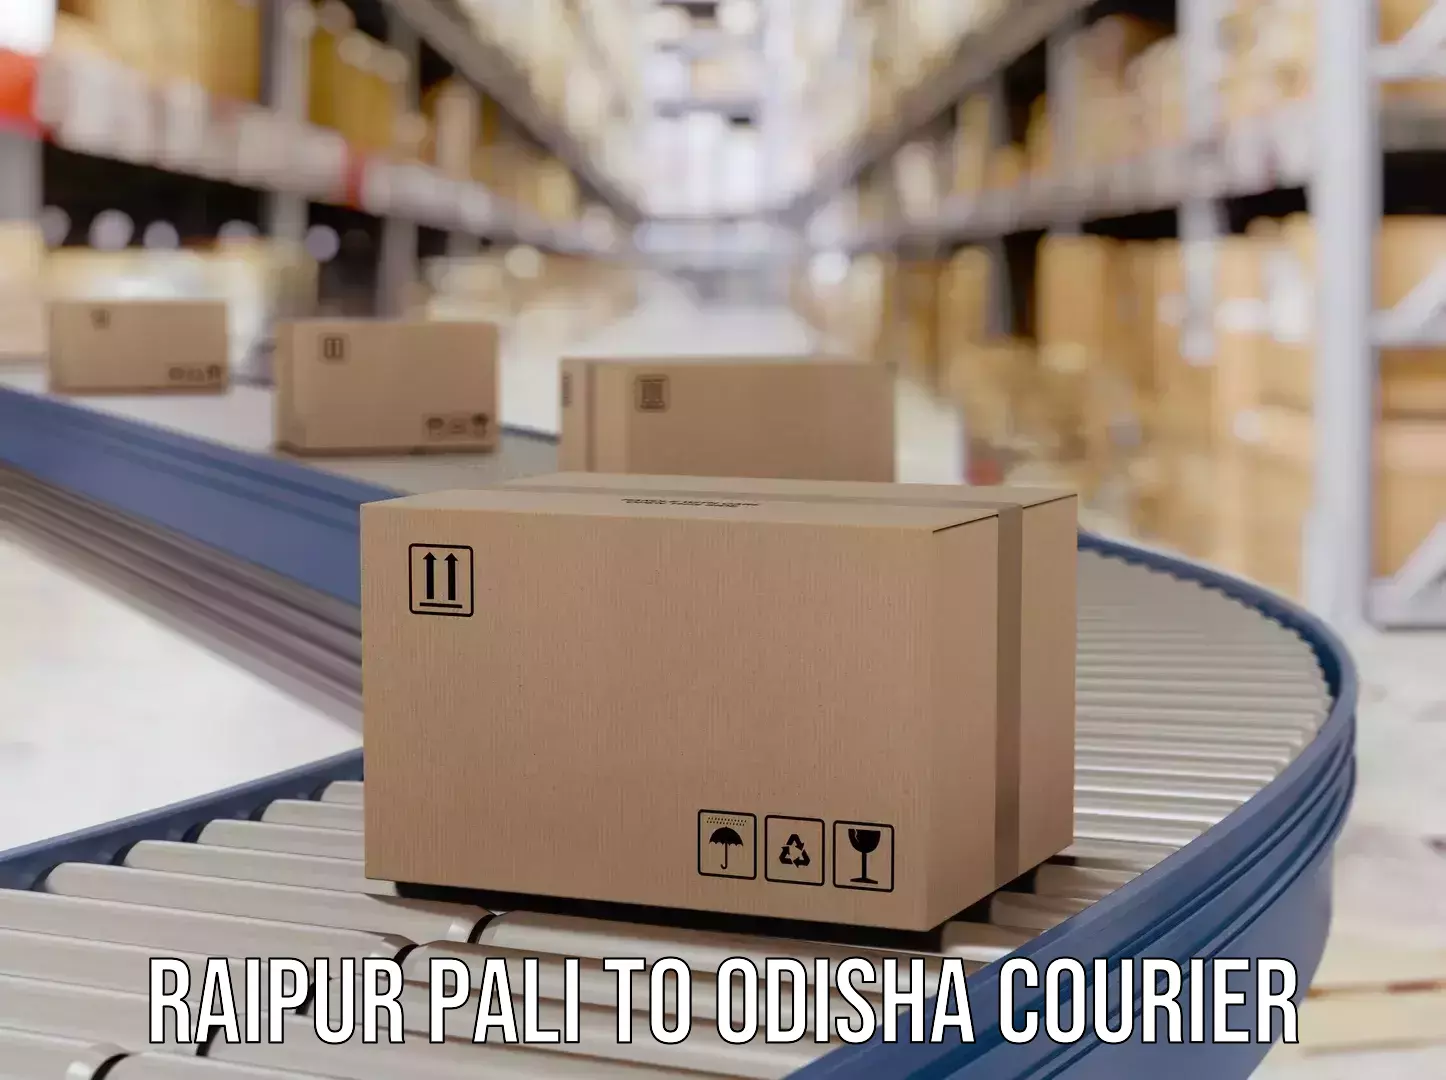 Full-service courier options Raipur Pali to Berhampur Ganjam